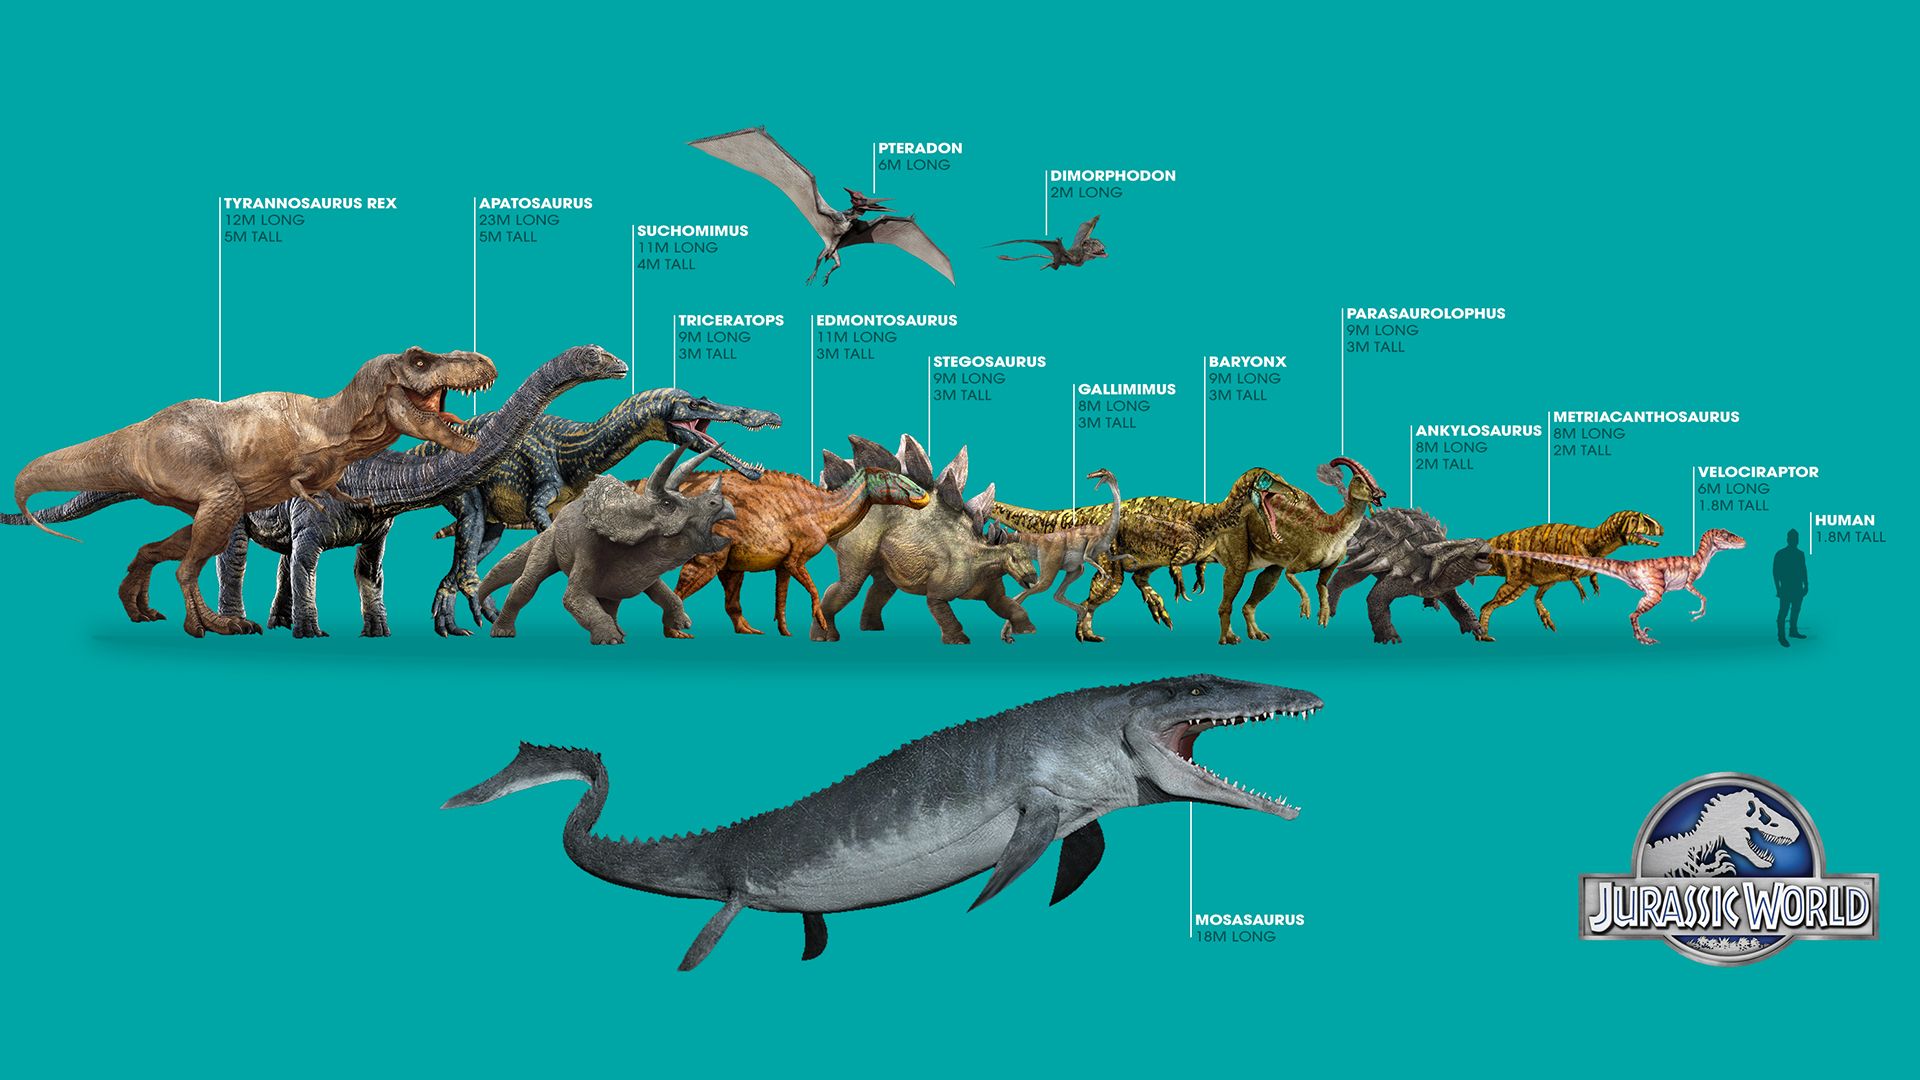 Jurassic World Dinosaurios Wallpaper - Con tamaños y escala correcta: D